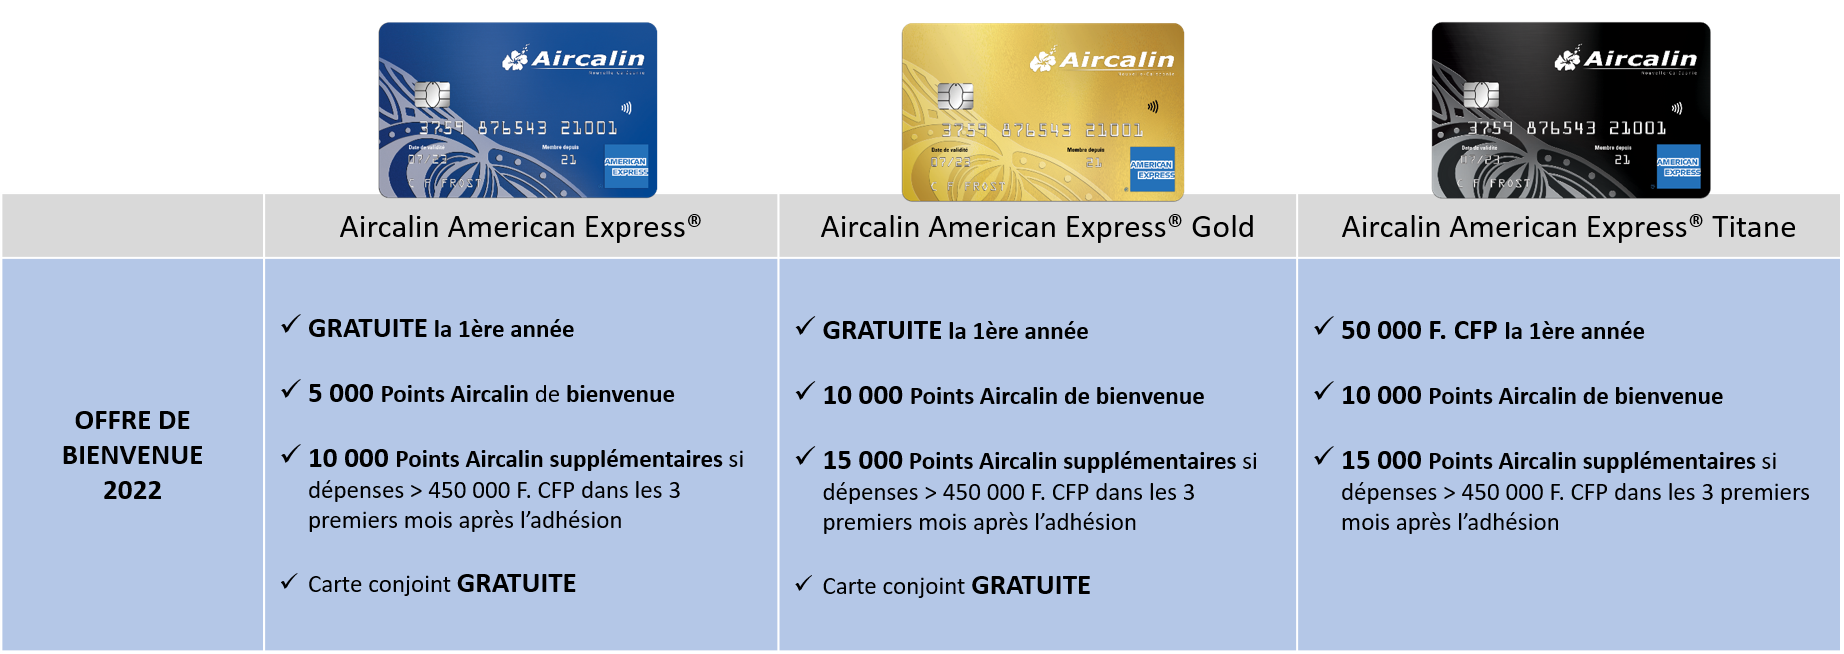 Cartes Aircalin Amex-Offres de bienvenue